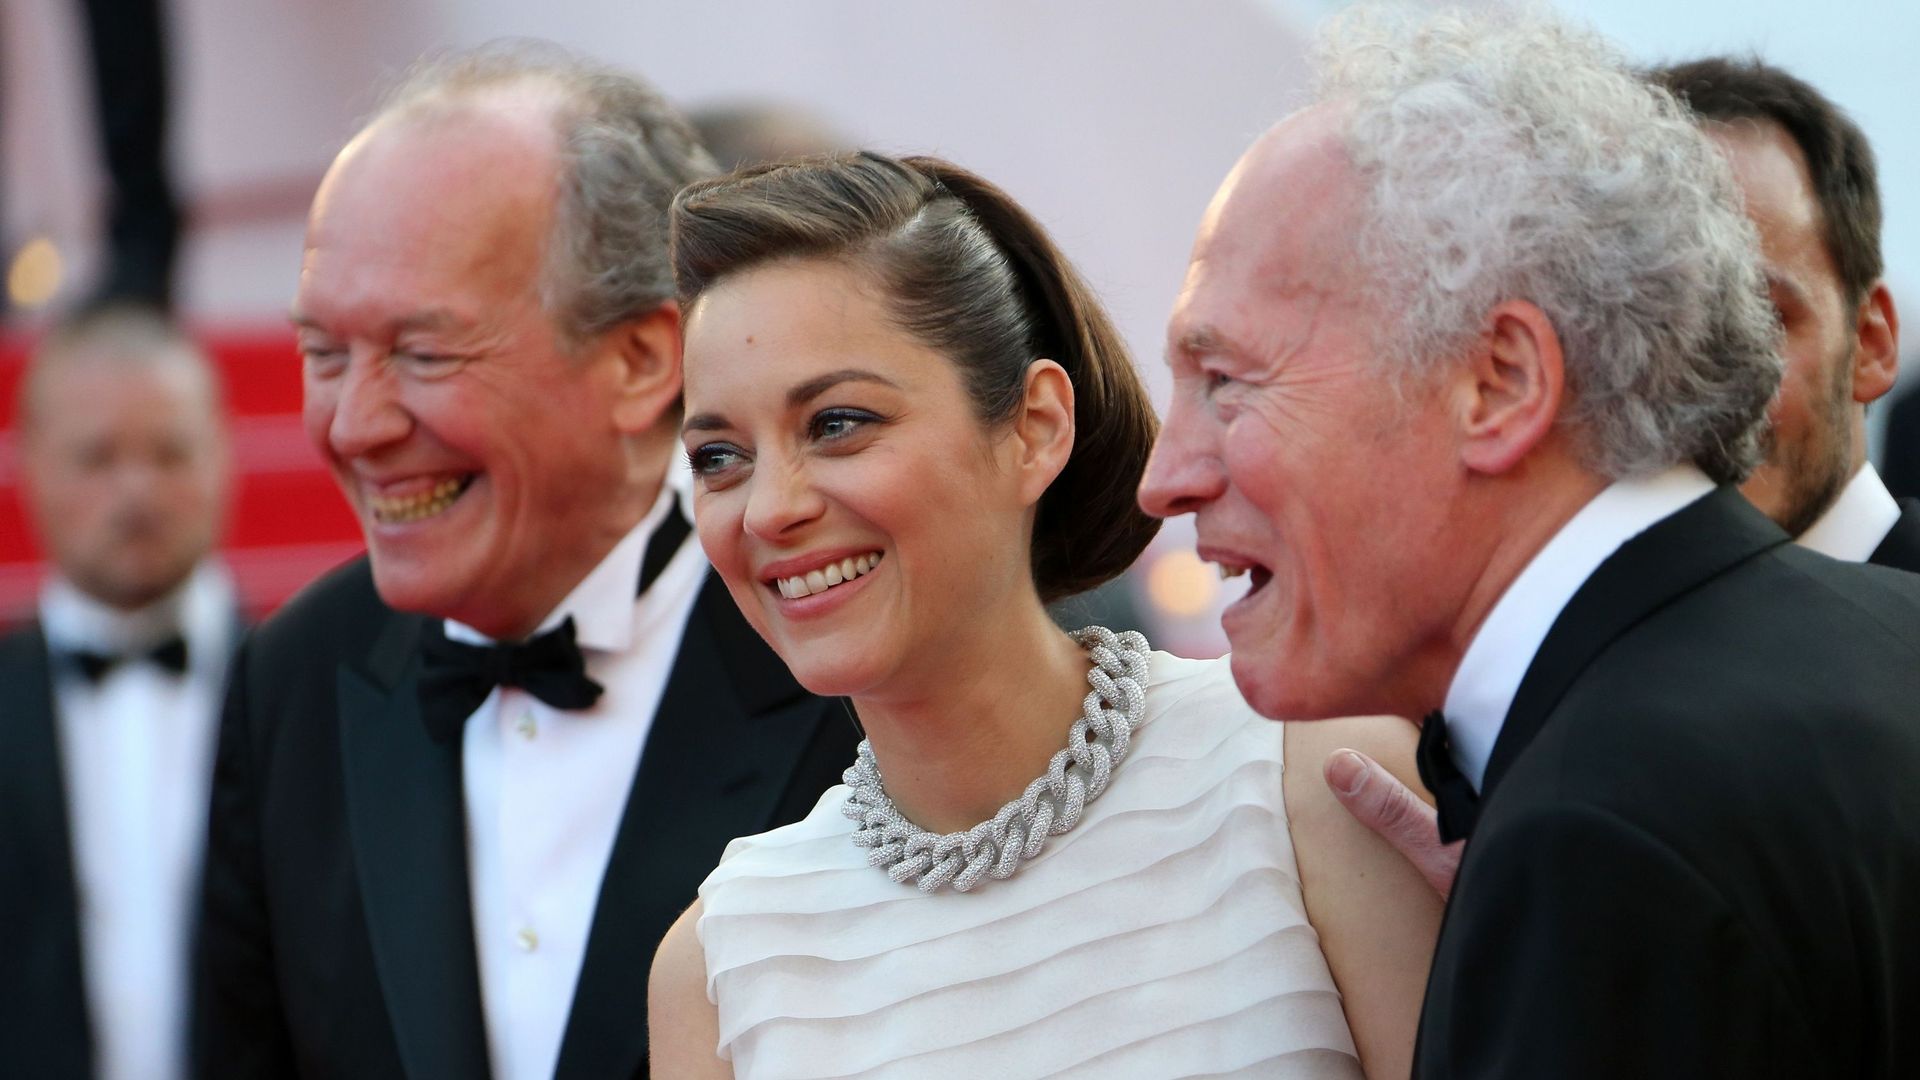 Luc et Jean-Pierre Dardenne venus présenter à Cannes, leur film "Deux jours, une nuit" avec Marion Cotillard